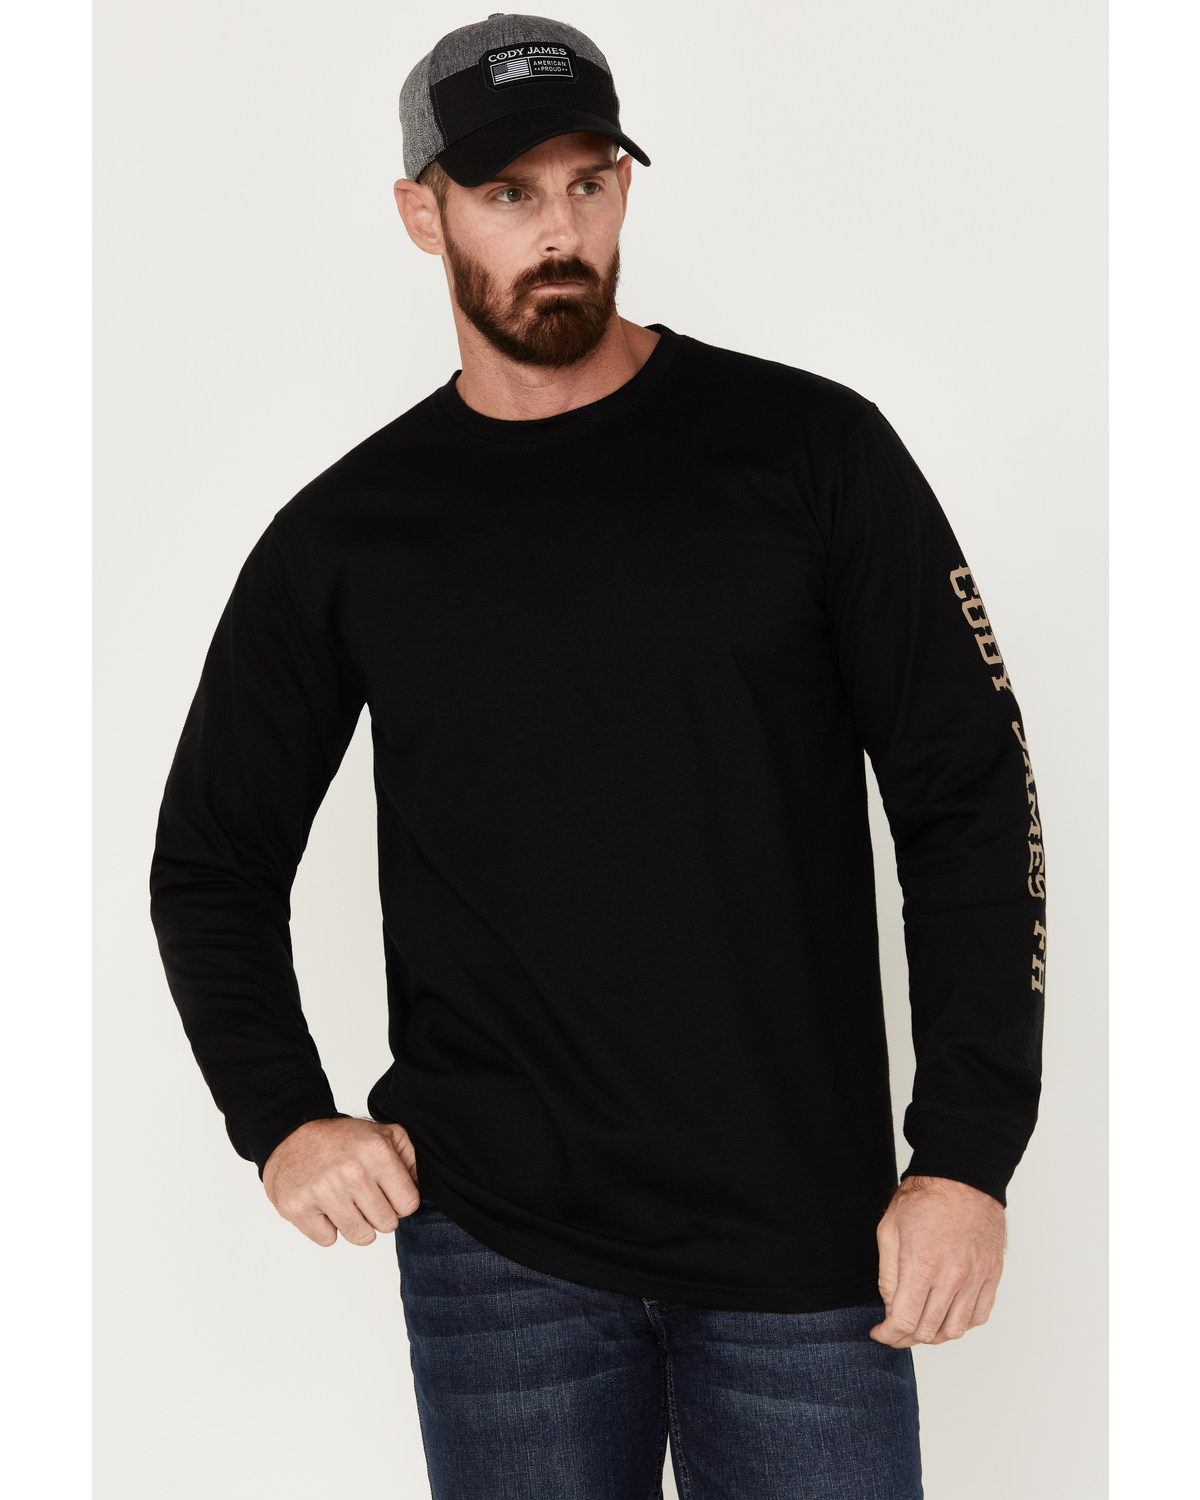 Cody James Men's Bull Skull Logo Graphic Long Sleeve Work T-Shirt